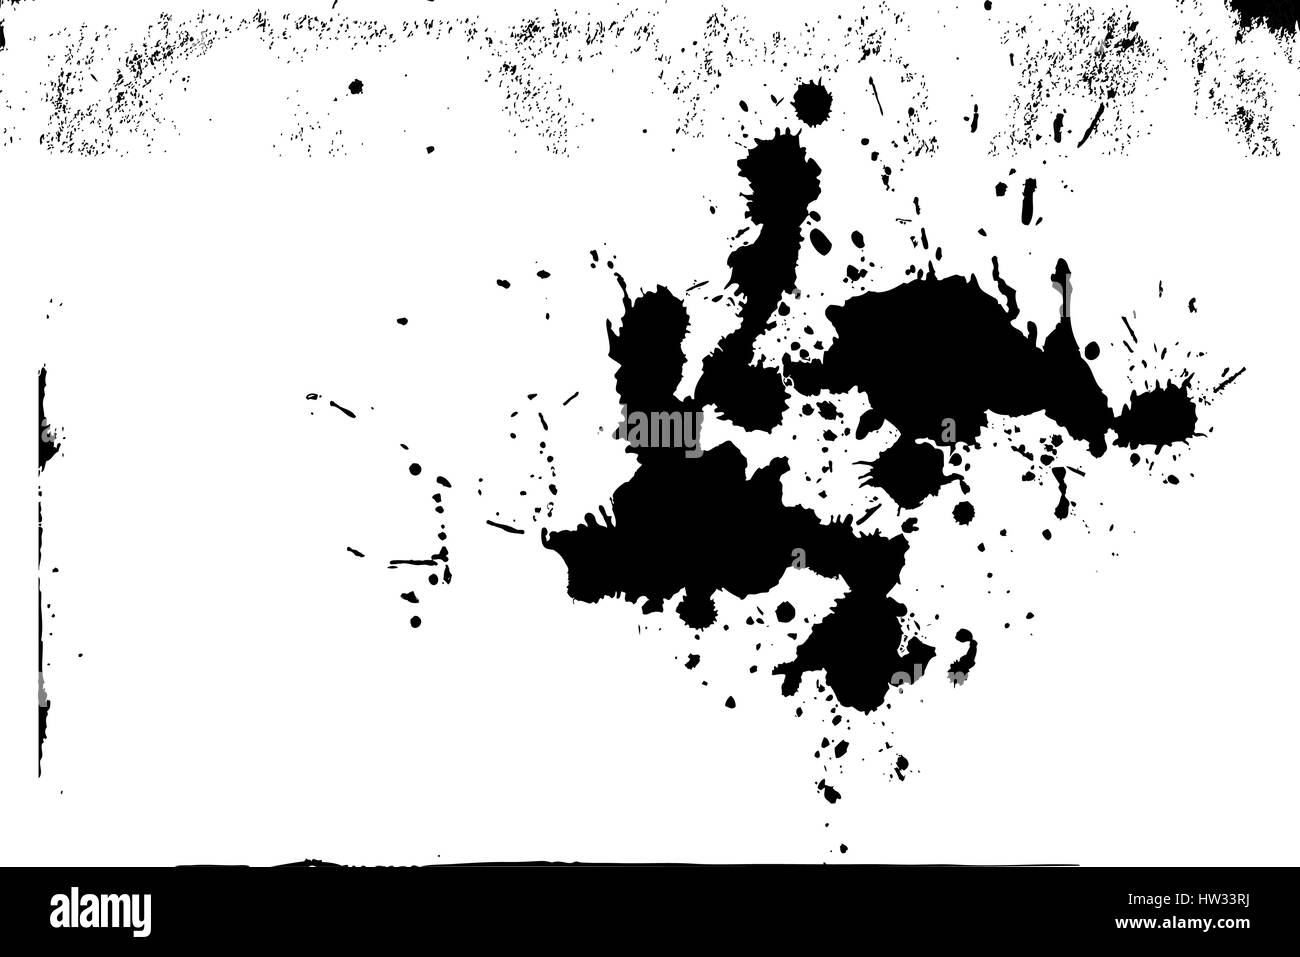 Grunge Texturen Hintergrund, Farbe schwarz / weiß Splash Ressource für Überlagerungseffekt oder schmutzige Detail isoliert. EPS10 Vektor. Stock Vektor